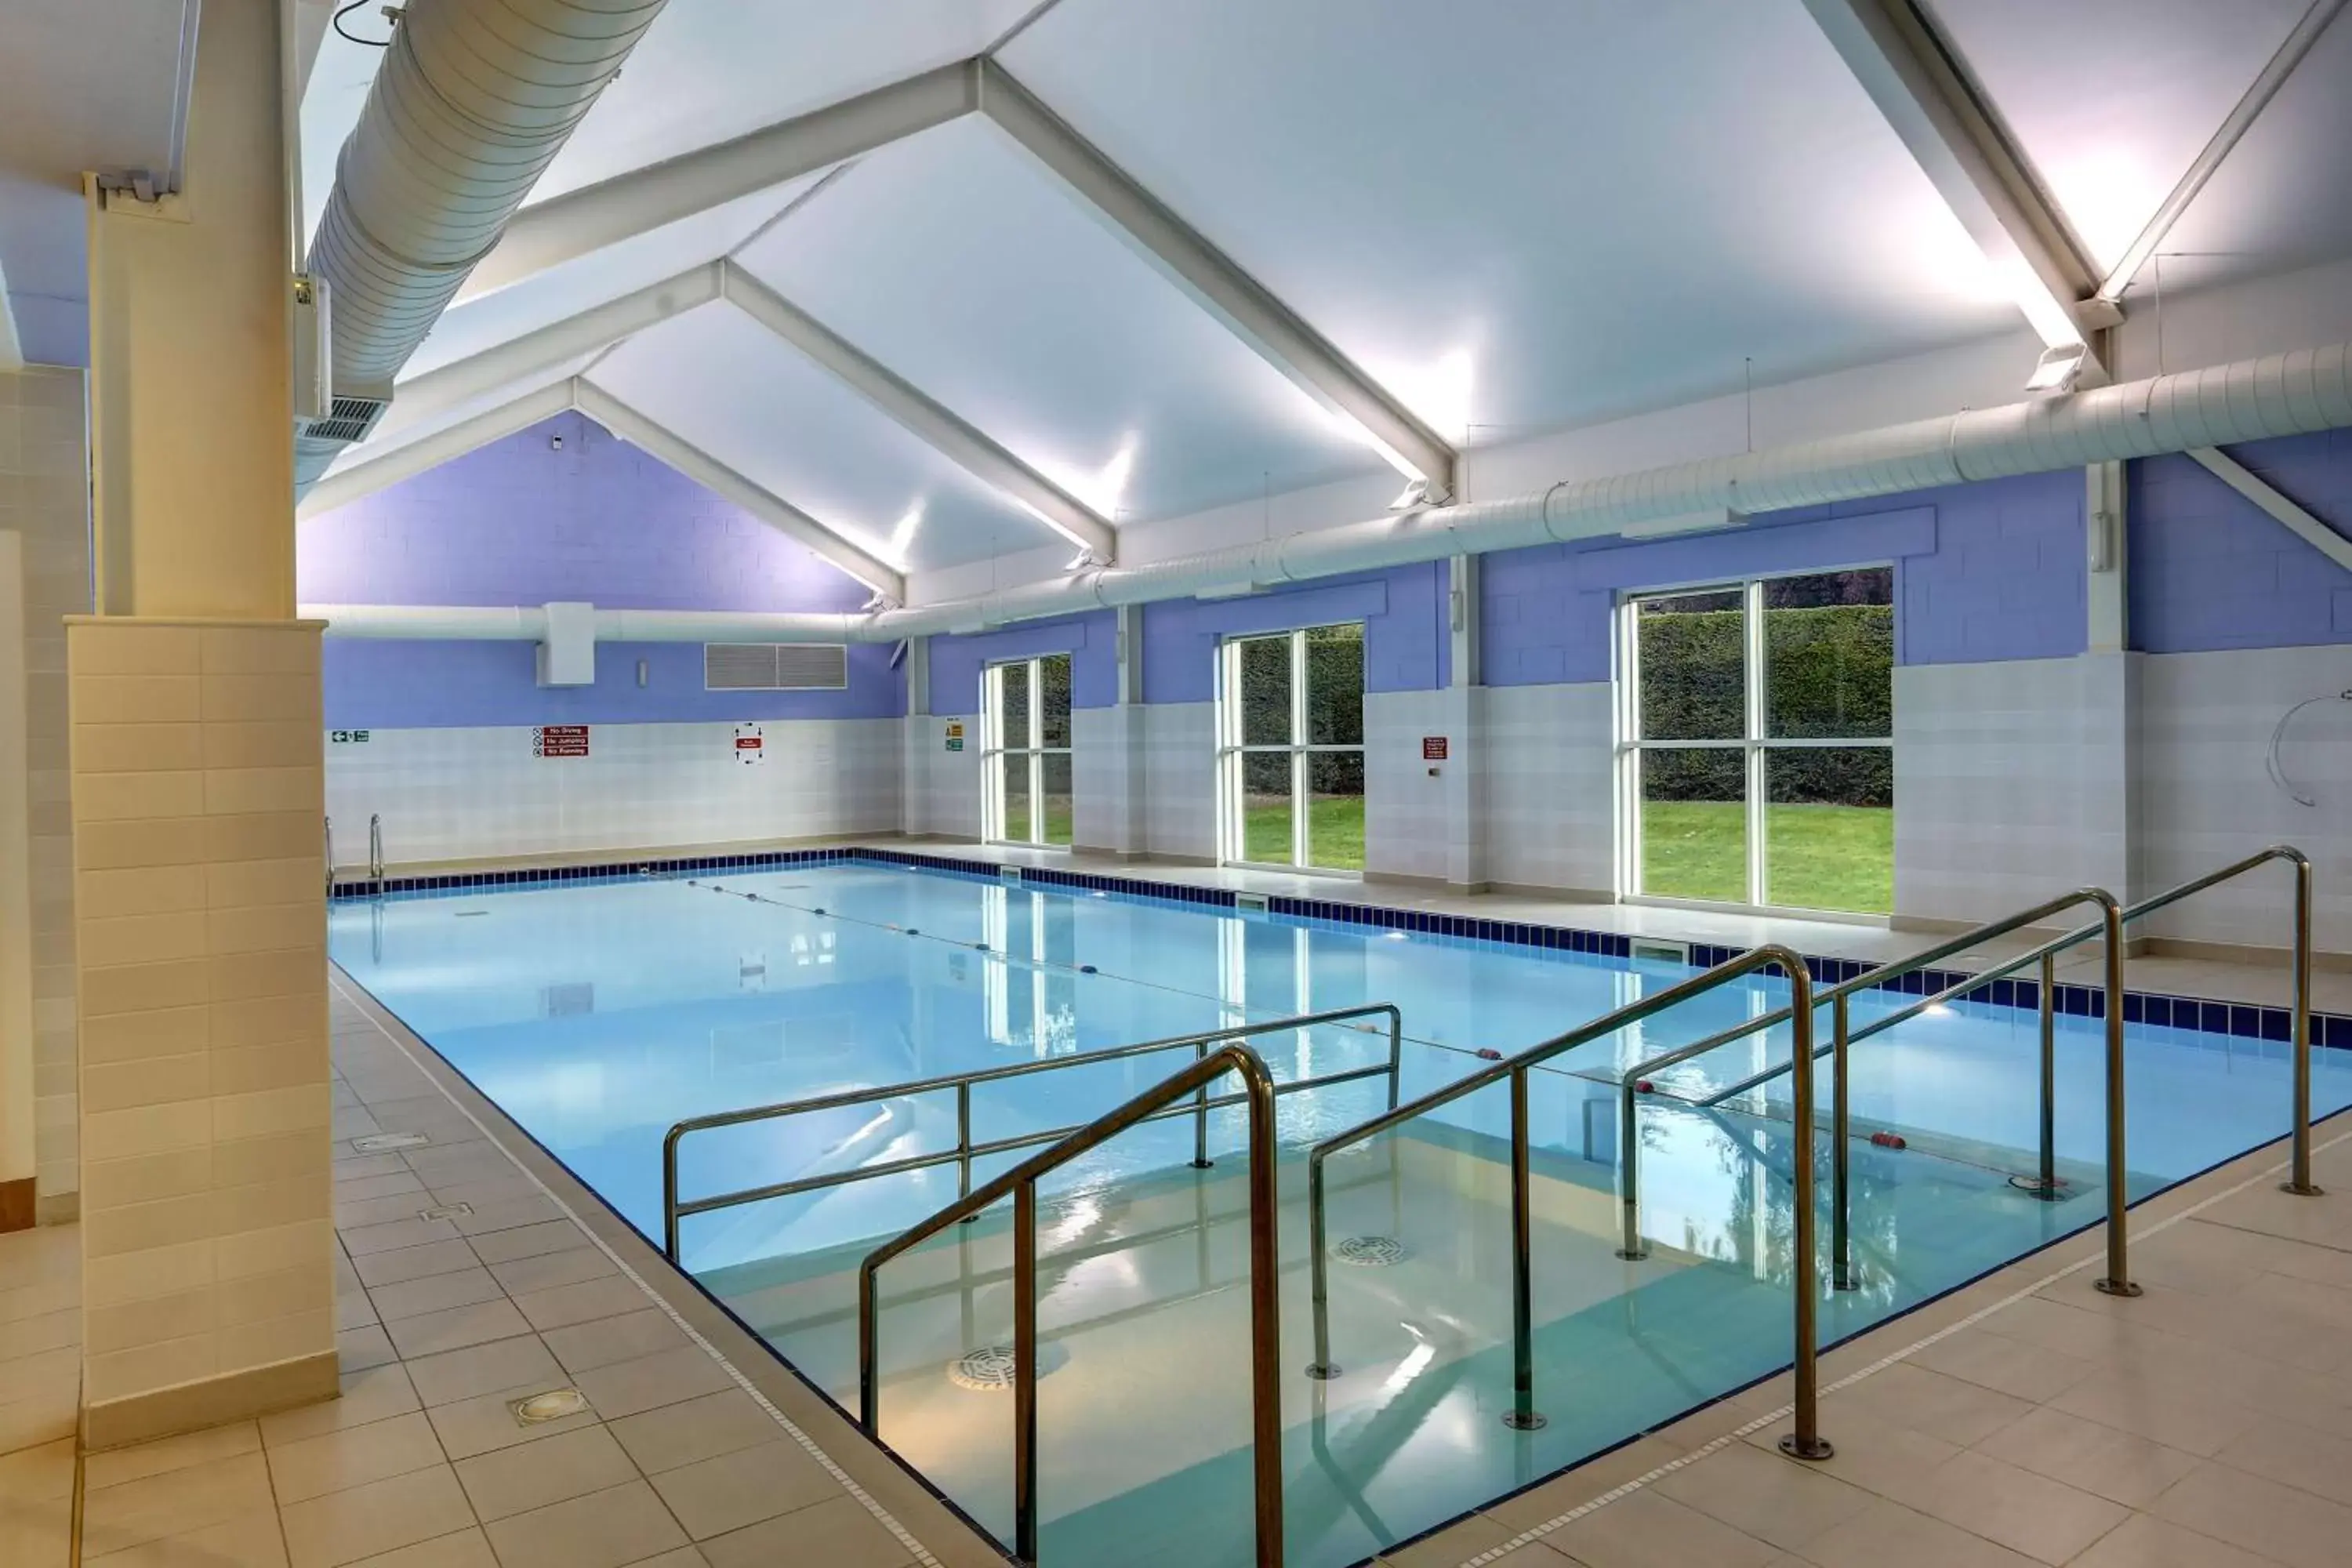 On site, Swimming Pool in Best Western Balgeddie House Hotel